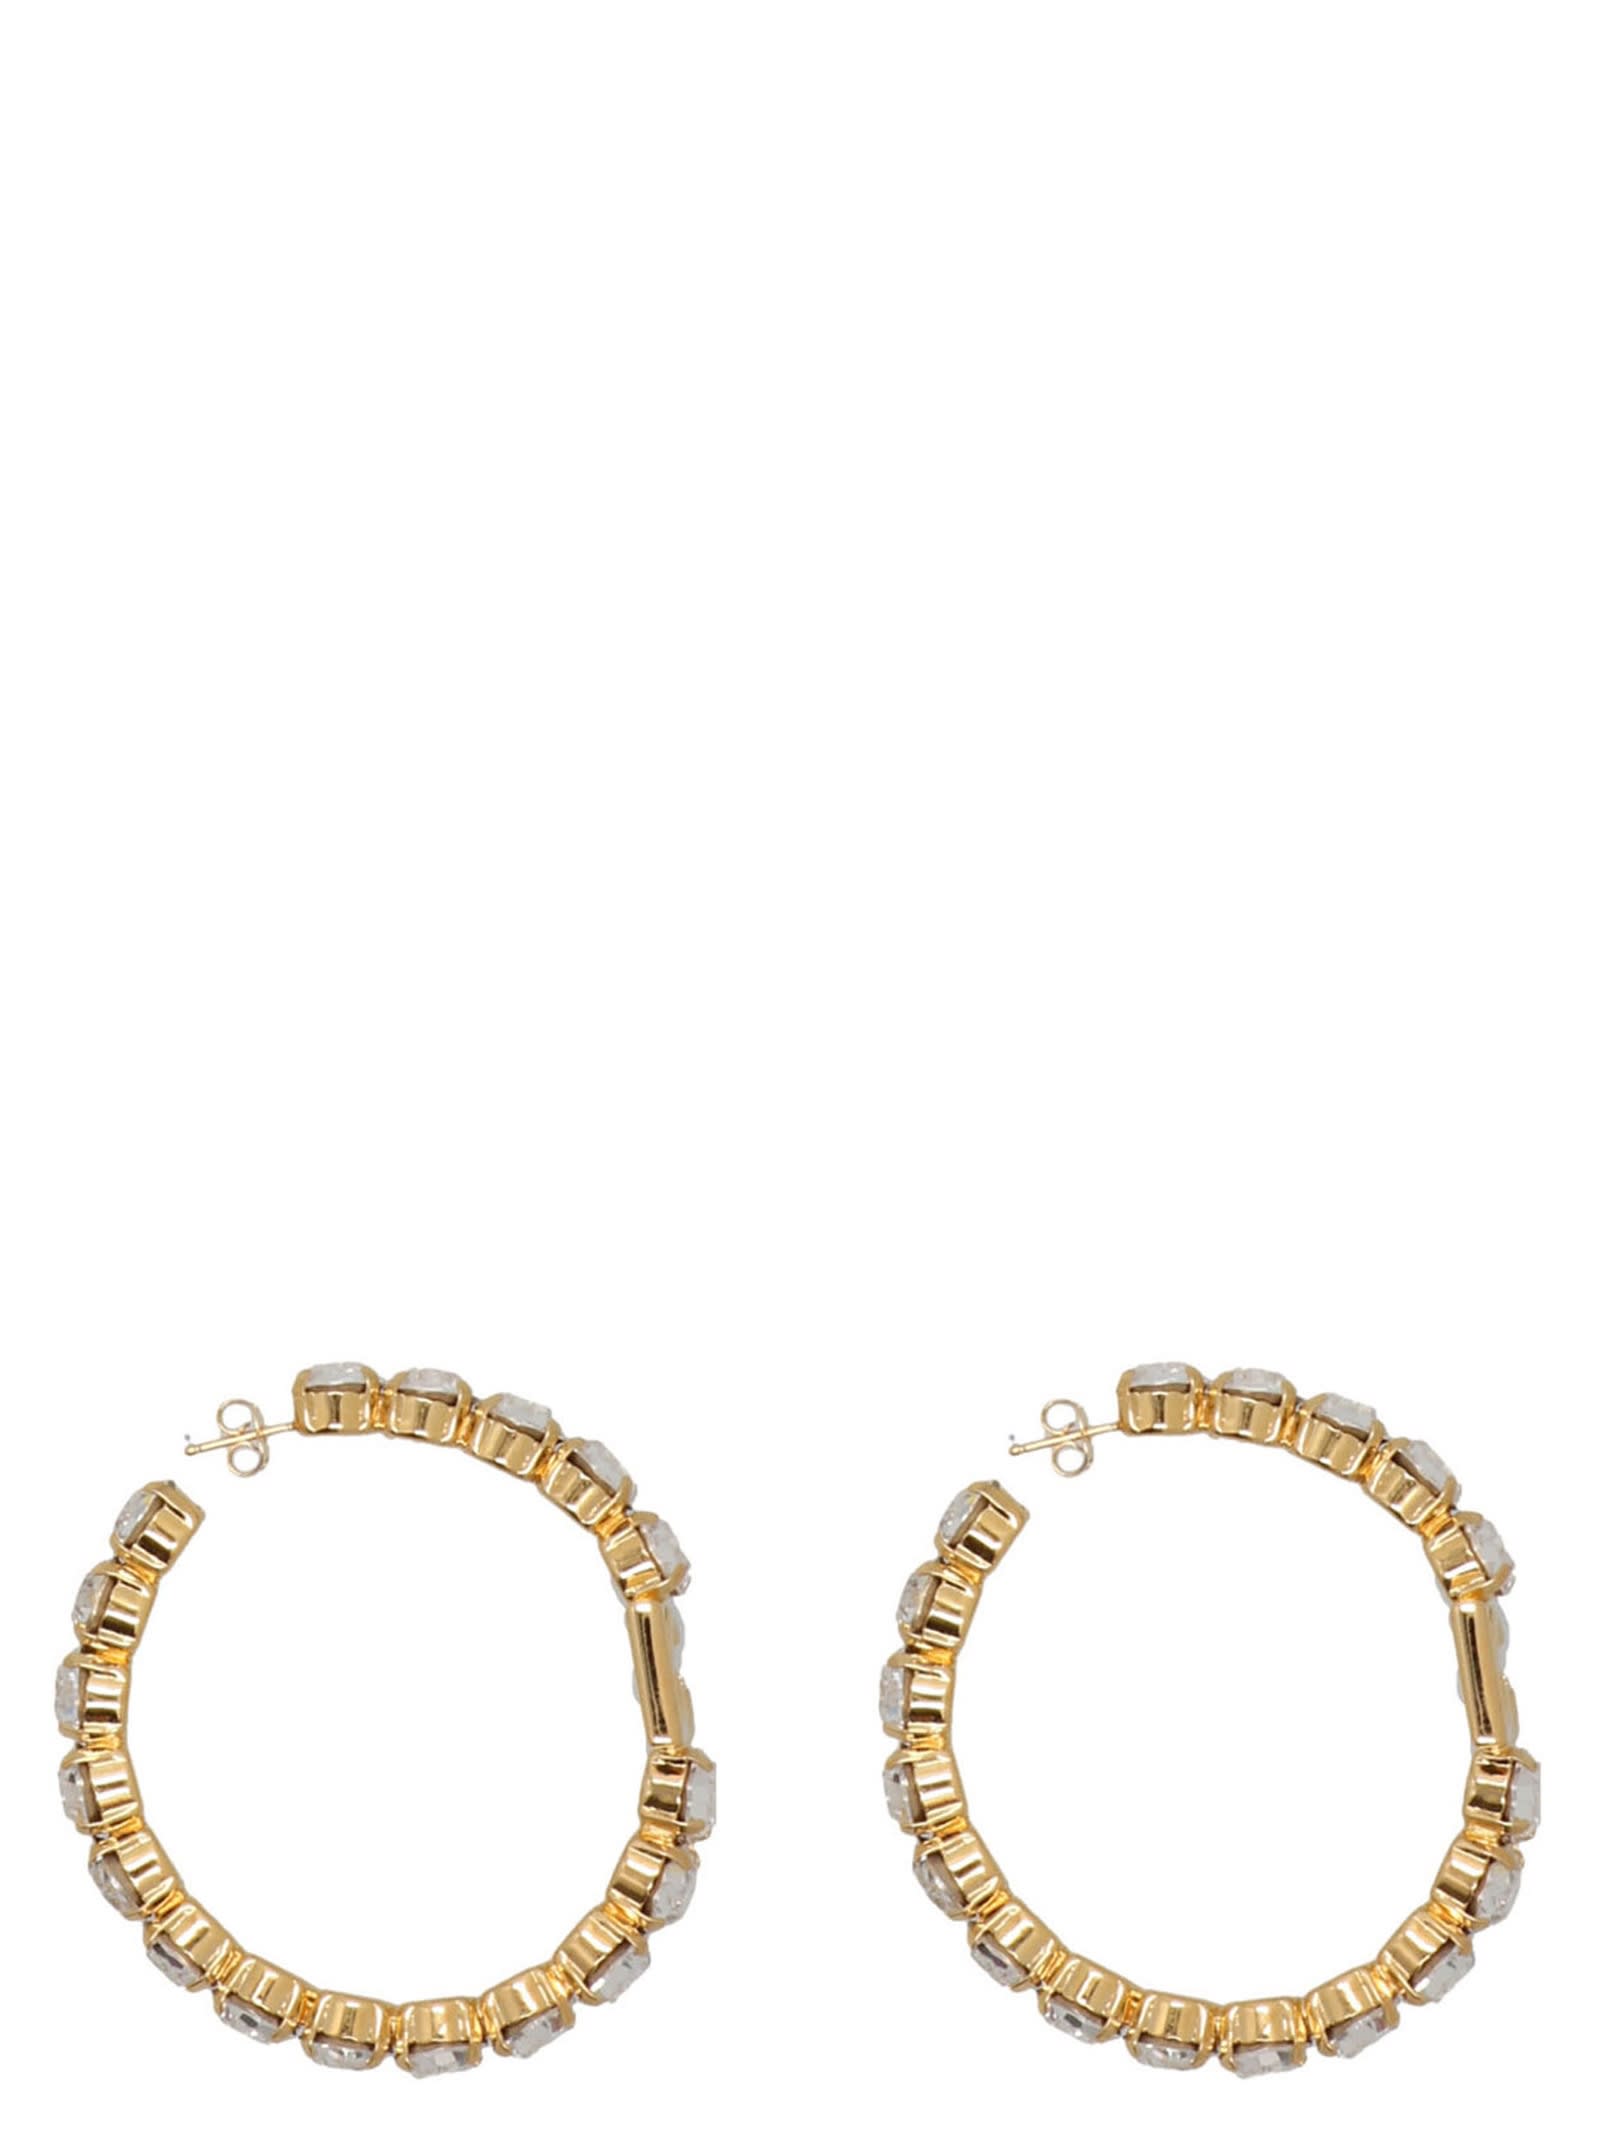 Dolce & Gabbana Diva Earrings